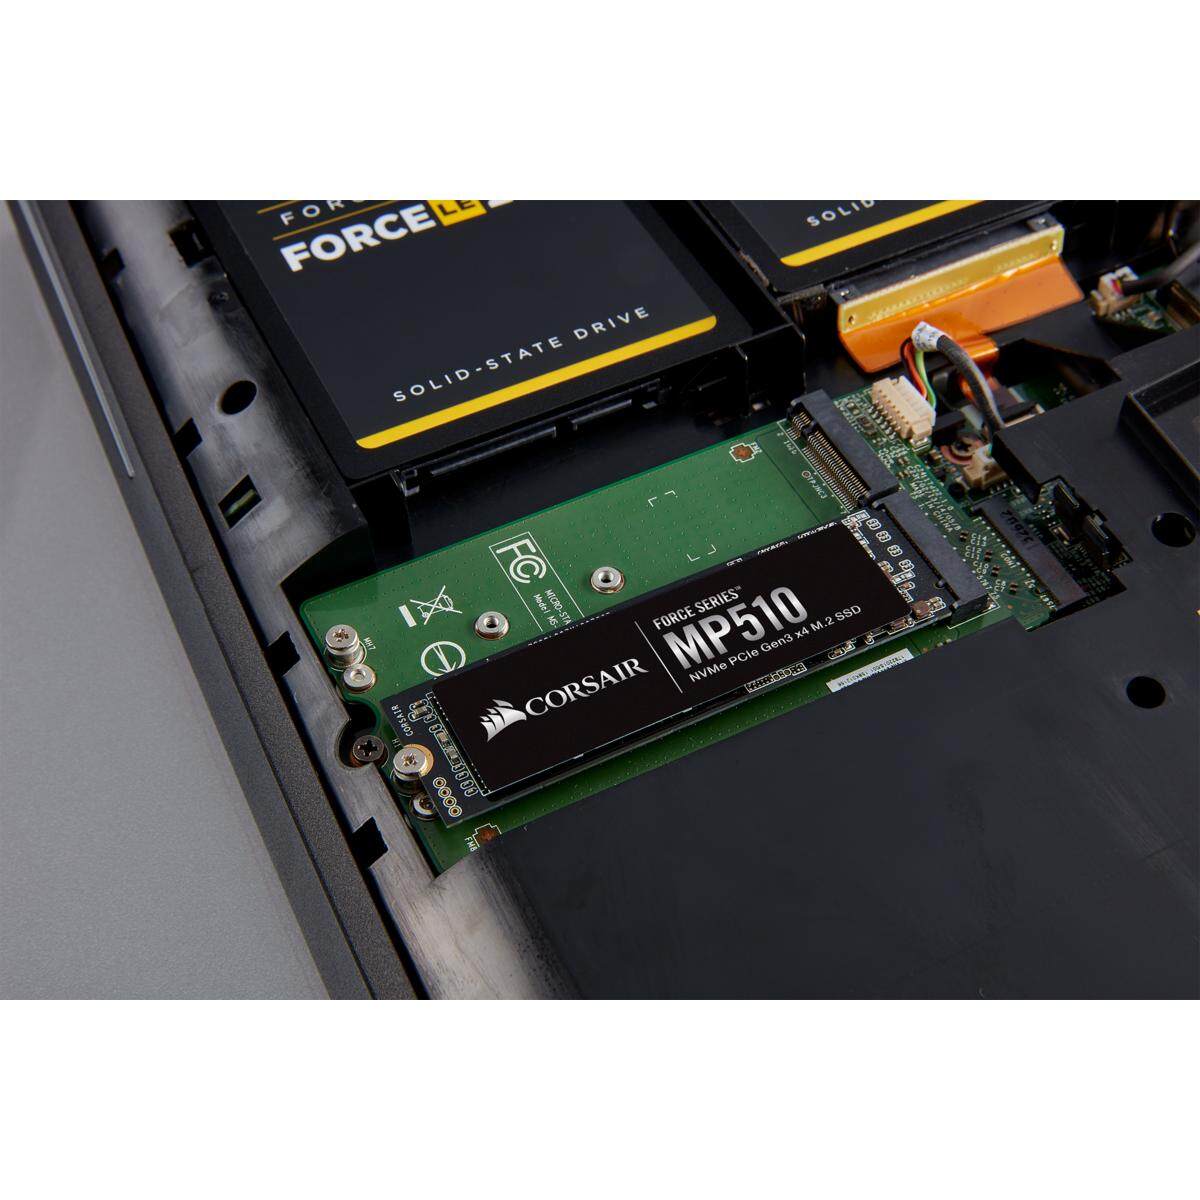 Corsair M.2 PCIE NVME MP510 240GB/480GB/960GB/1920GB  SSD Solid State Drives (F240GBMP510/F480GBMP510/F960GBMP510/F1920GBMP510)